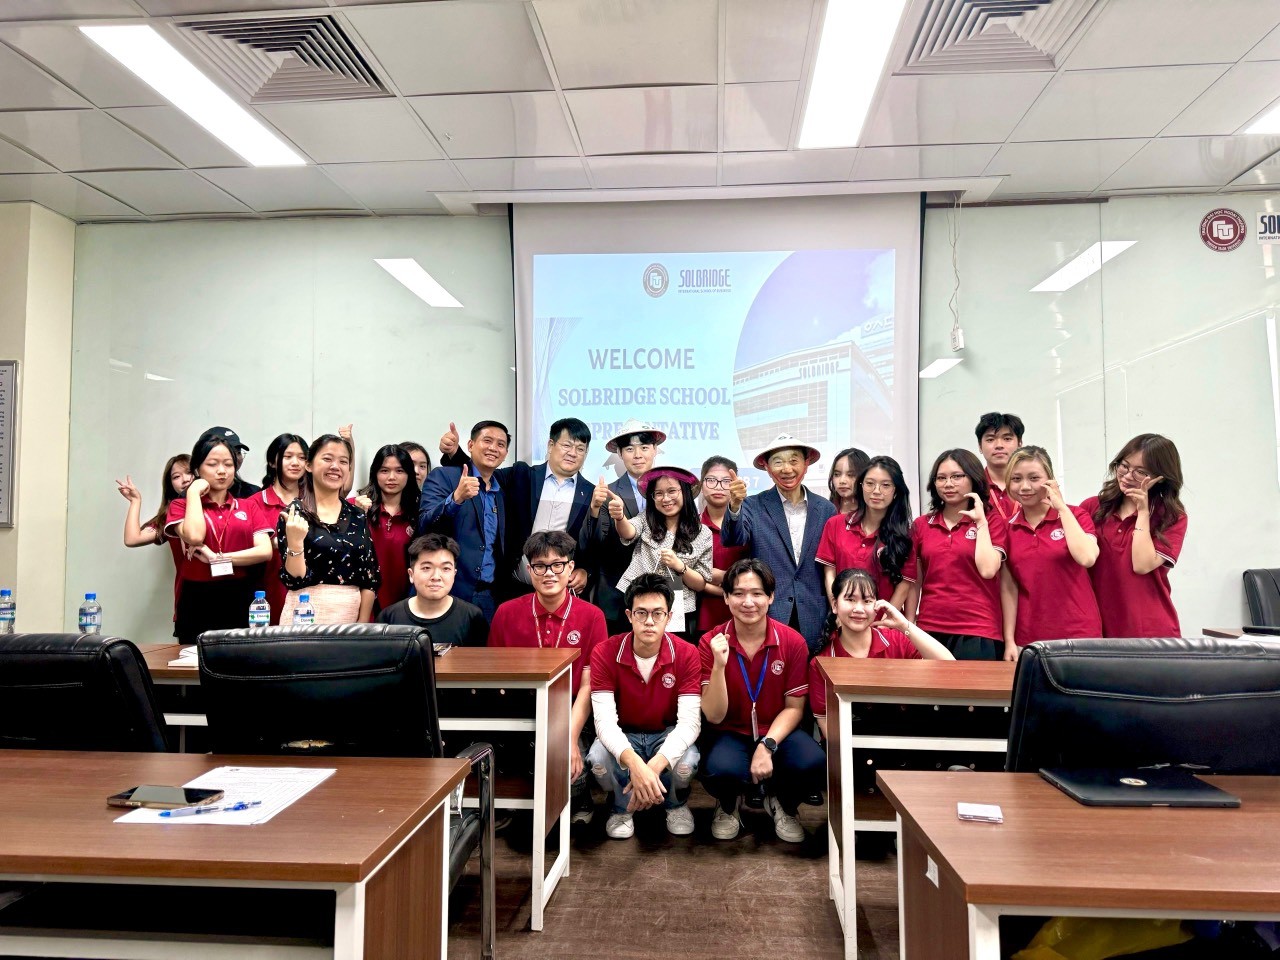 Vừa qua, đoàn đại biểu đến từ Đại học Woosong (Hàn Quốc) đã có buổi gặp gỡ với sinh viên chương trình Cử nhân Quản trị Kinh doanh liên kết với Trường Kinh doanh Quốc tế SolBridge (Hàn Quốc).